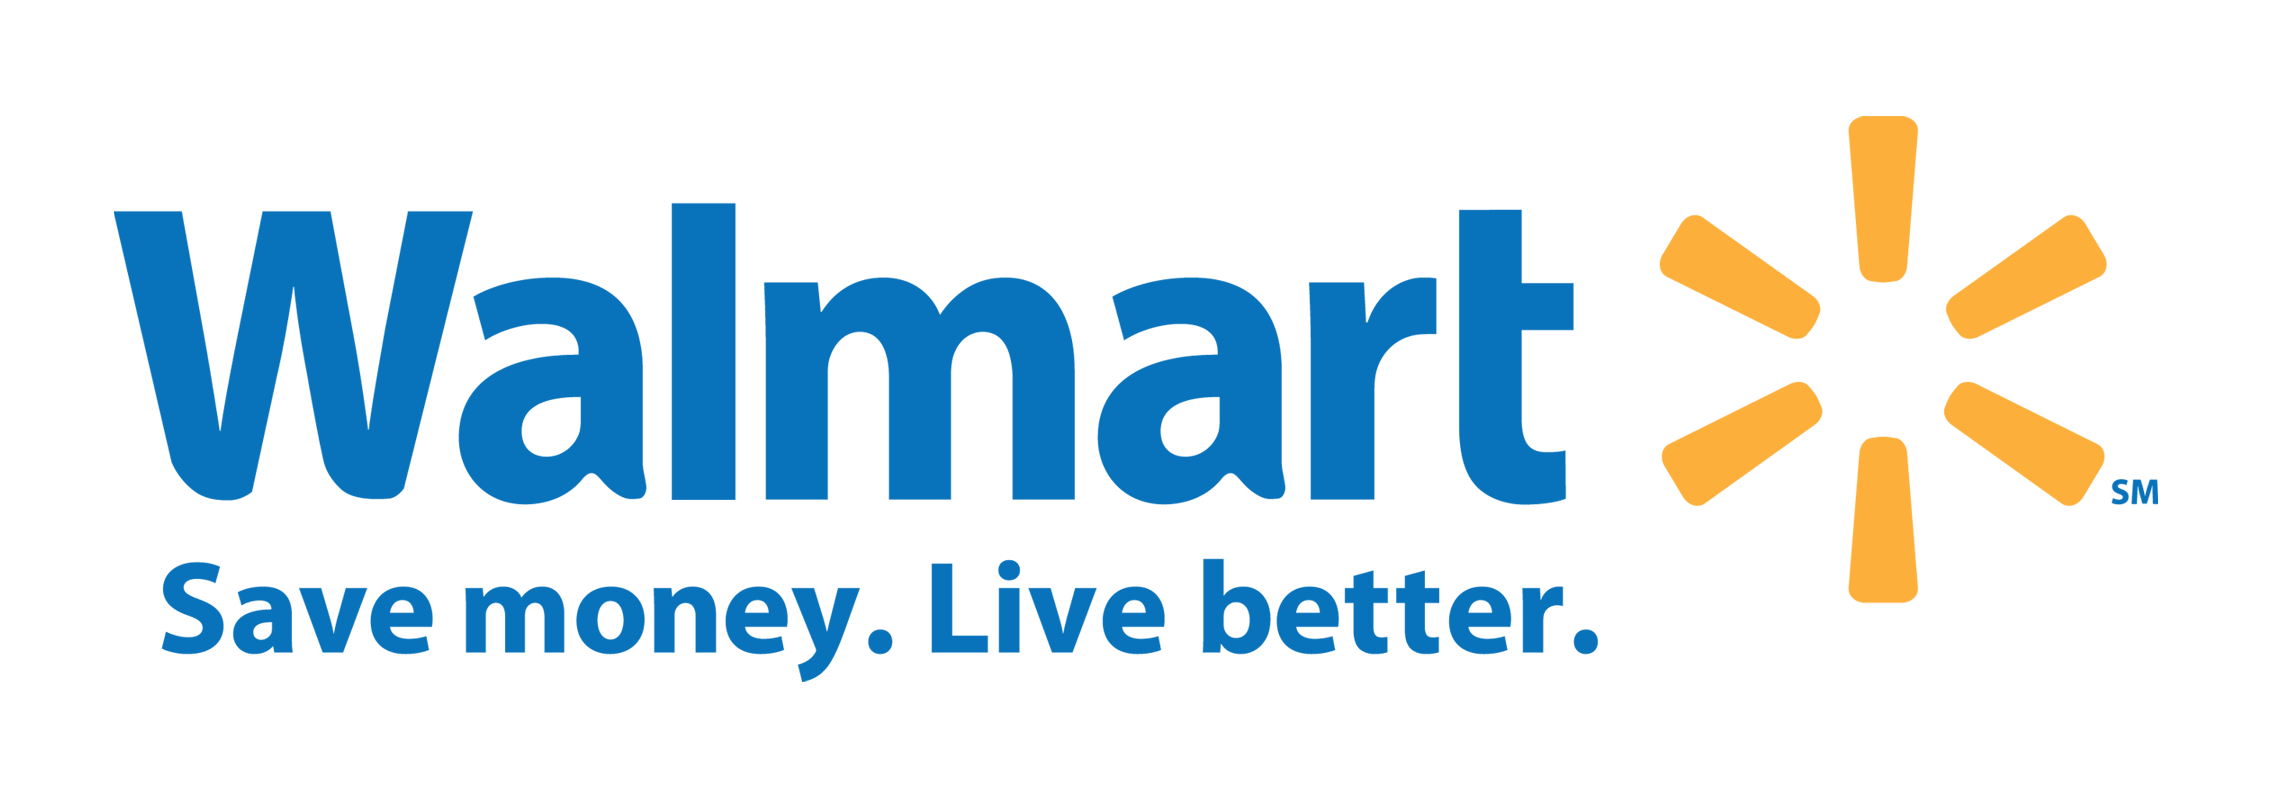 Walmart Logo PNG